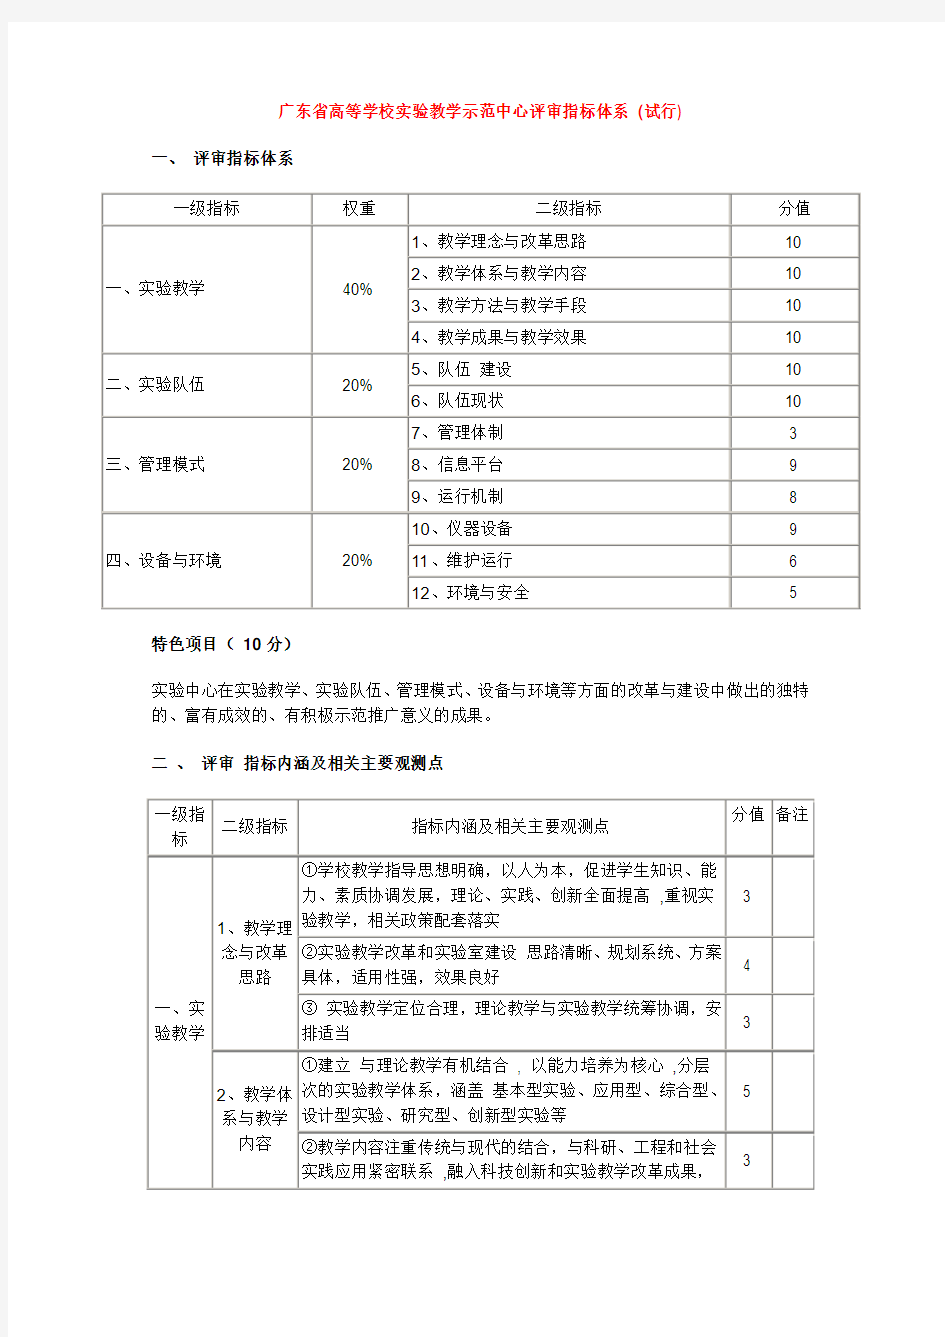 广东省高等学校实验教学示范中心评审指标体系(试行)